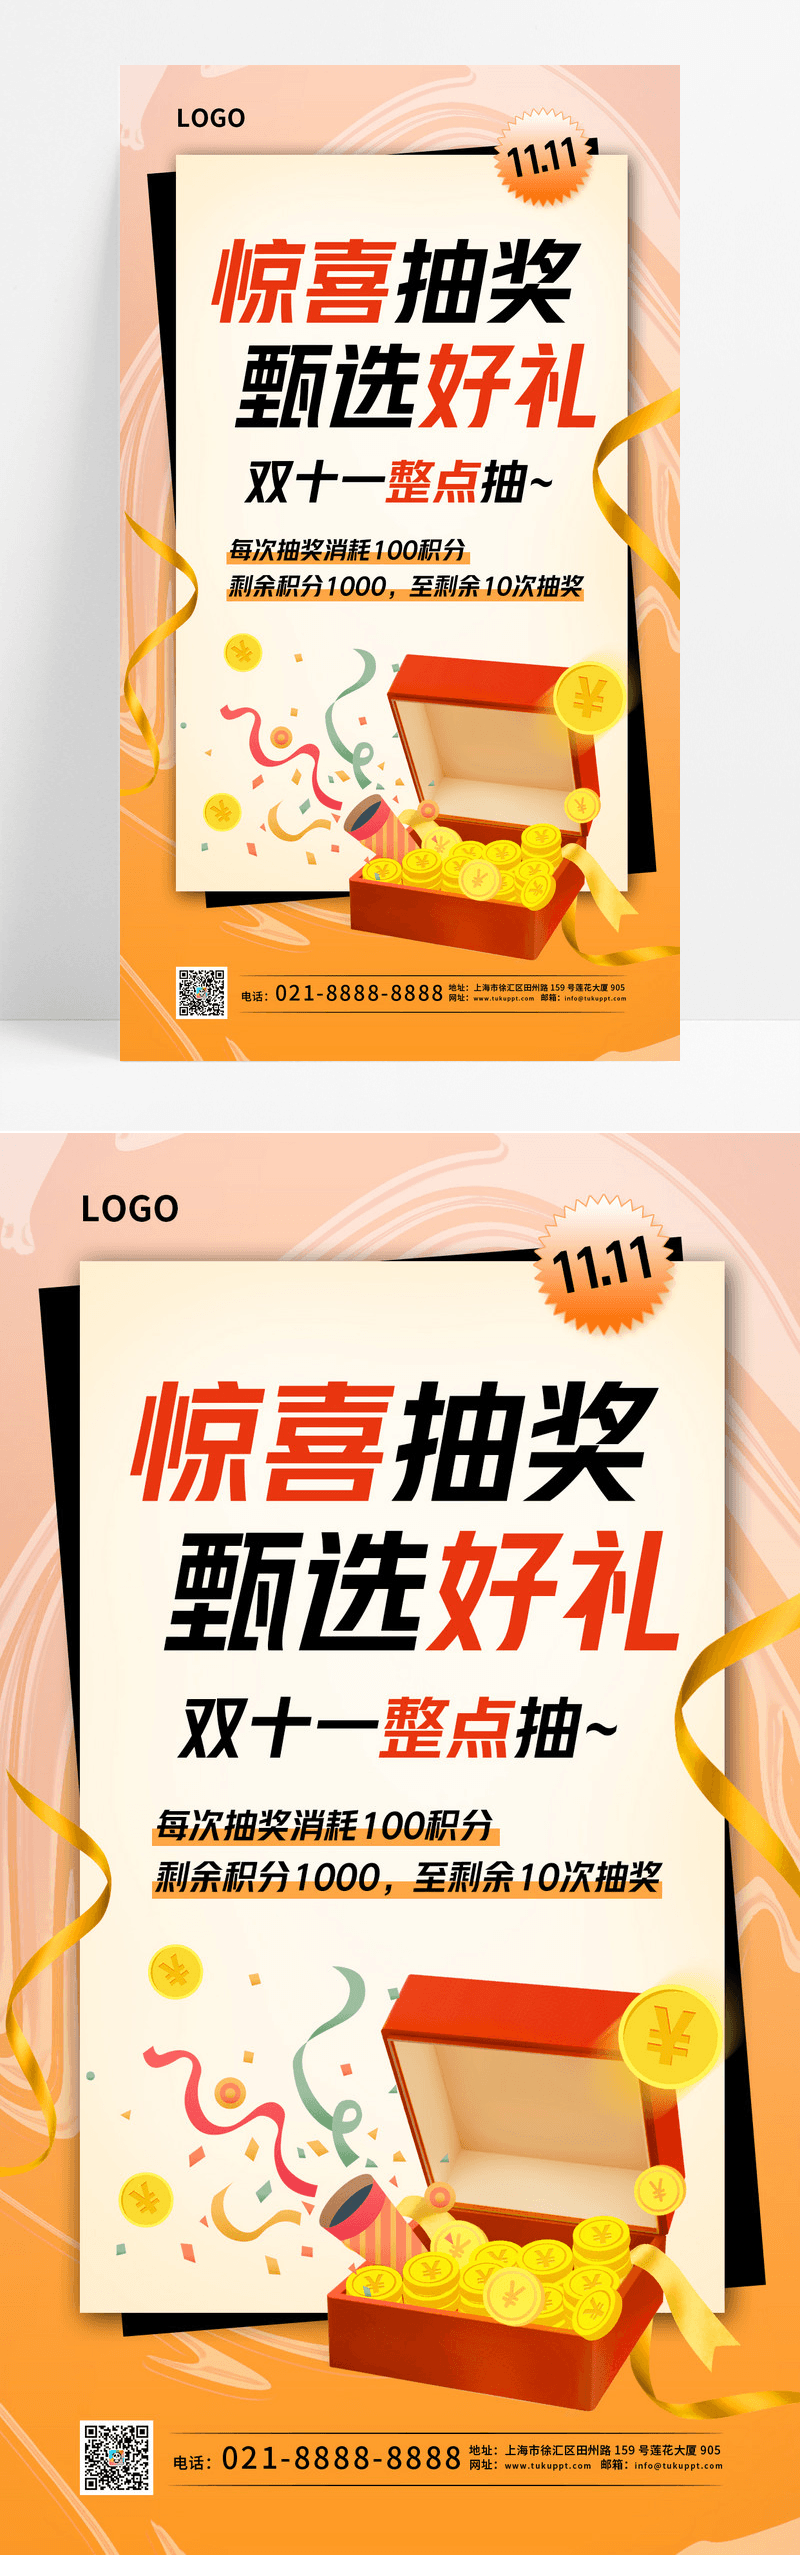 橘黄色酸性风惊喜抽奖双11双十一抽奖手机宣传海报